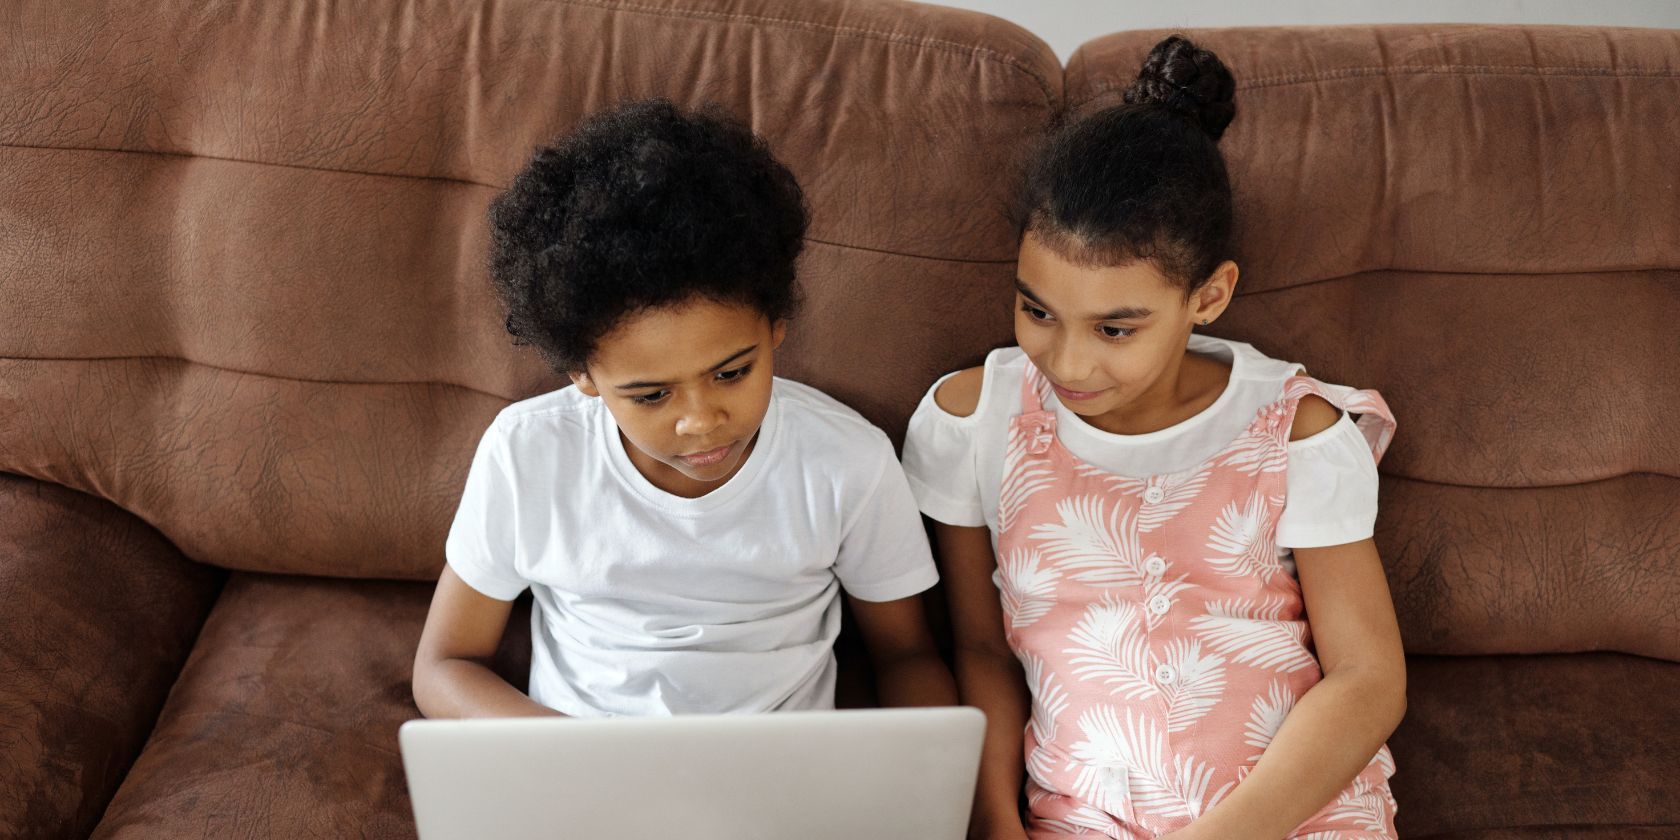 Kids watching video on laptop